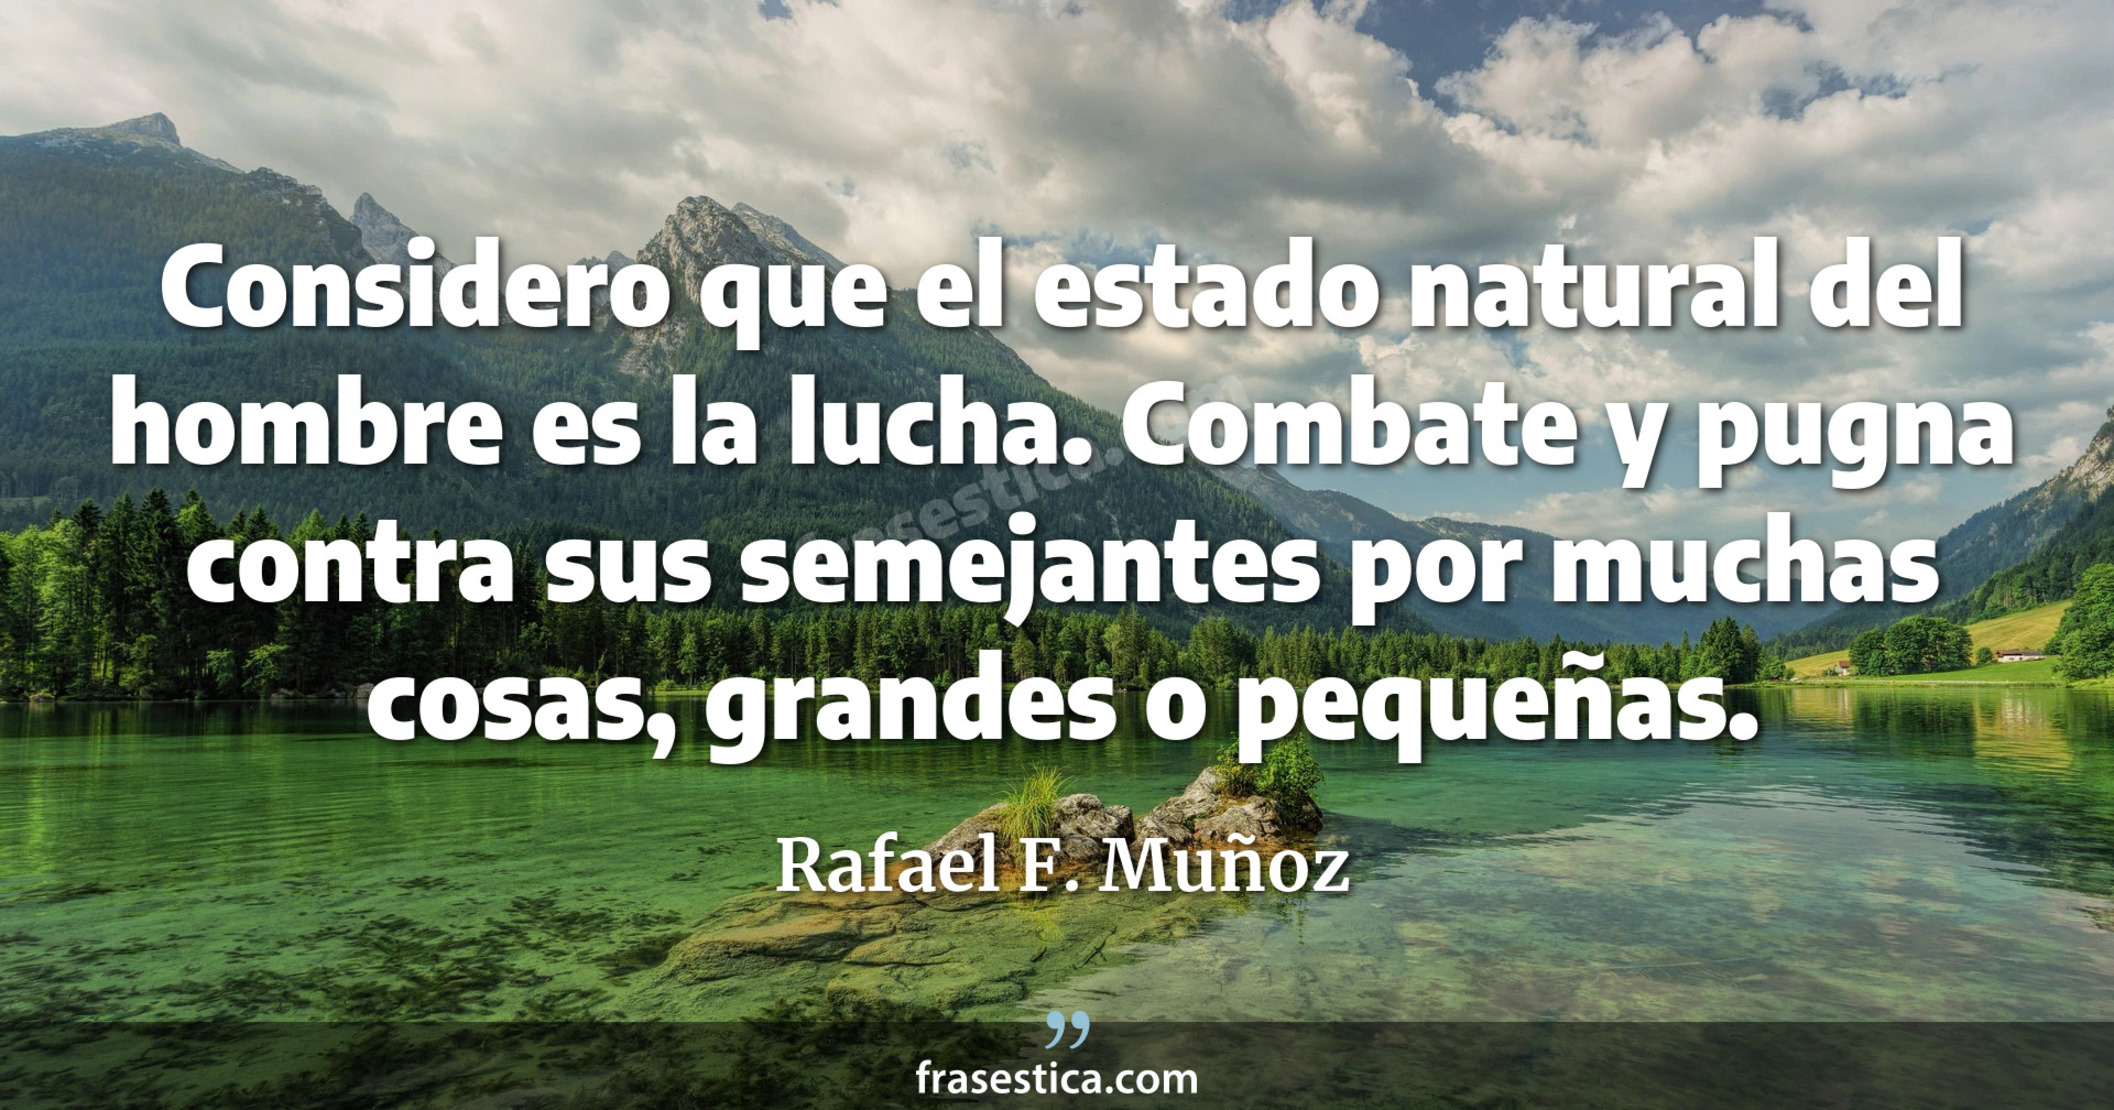 Considero que el estado natural del hombre es la lucha. Combate y pugna contra sus semejantes por muchas cosas, grandes o pequeñas. - Rafael F. Muñoz